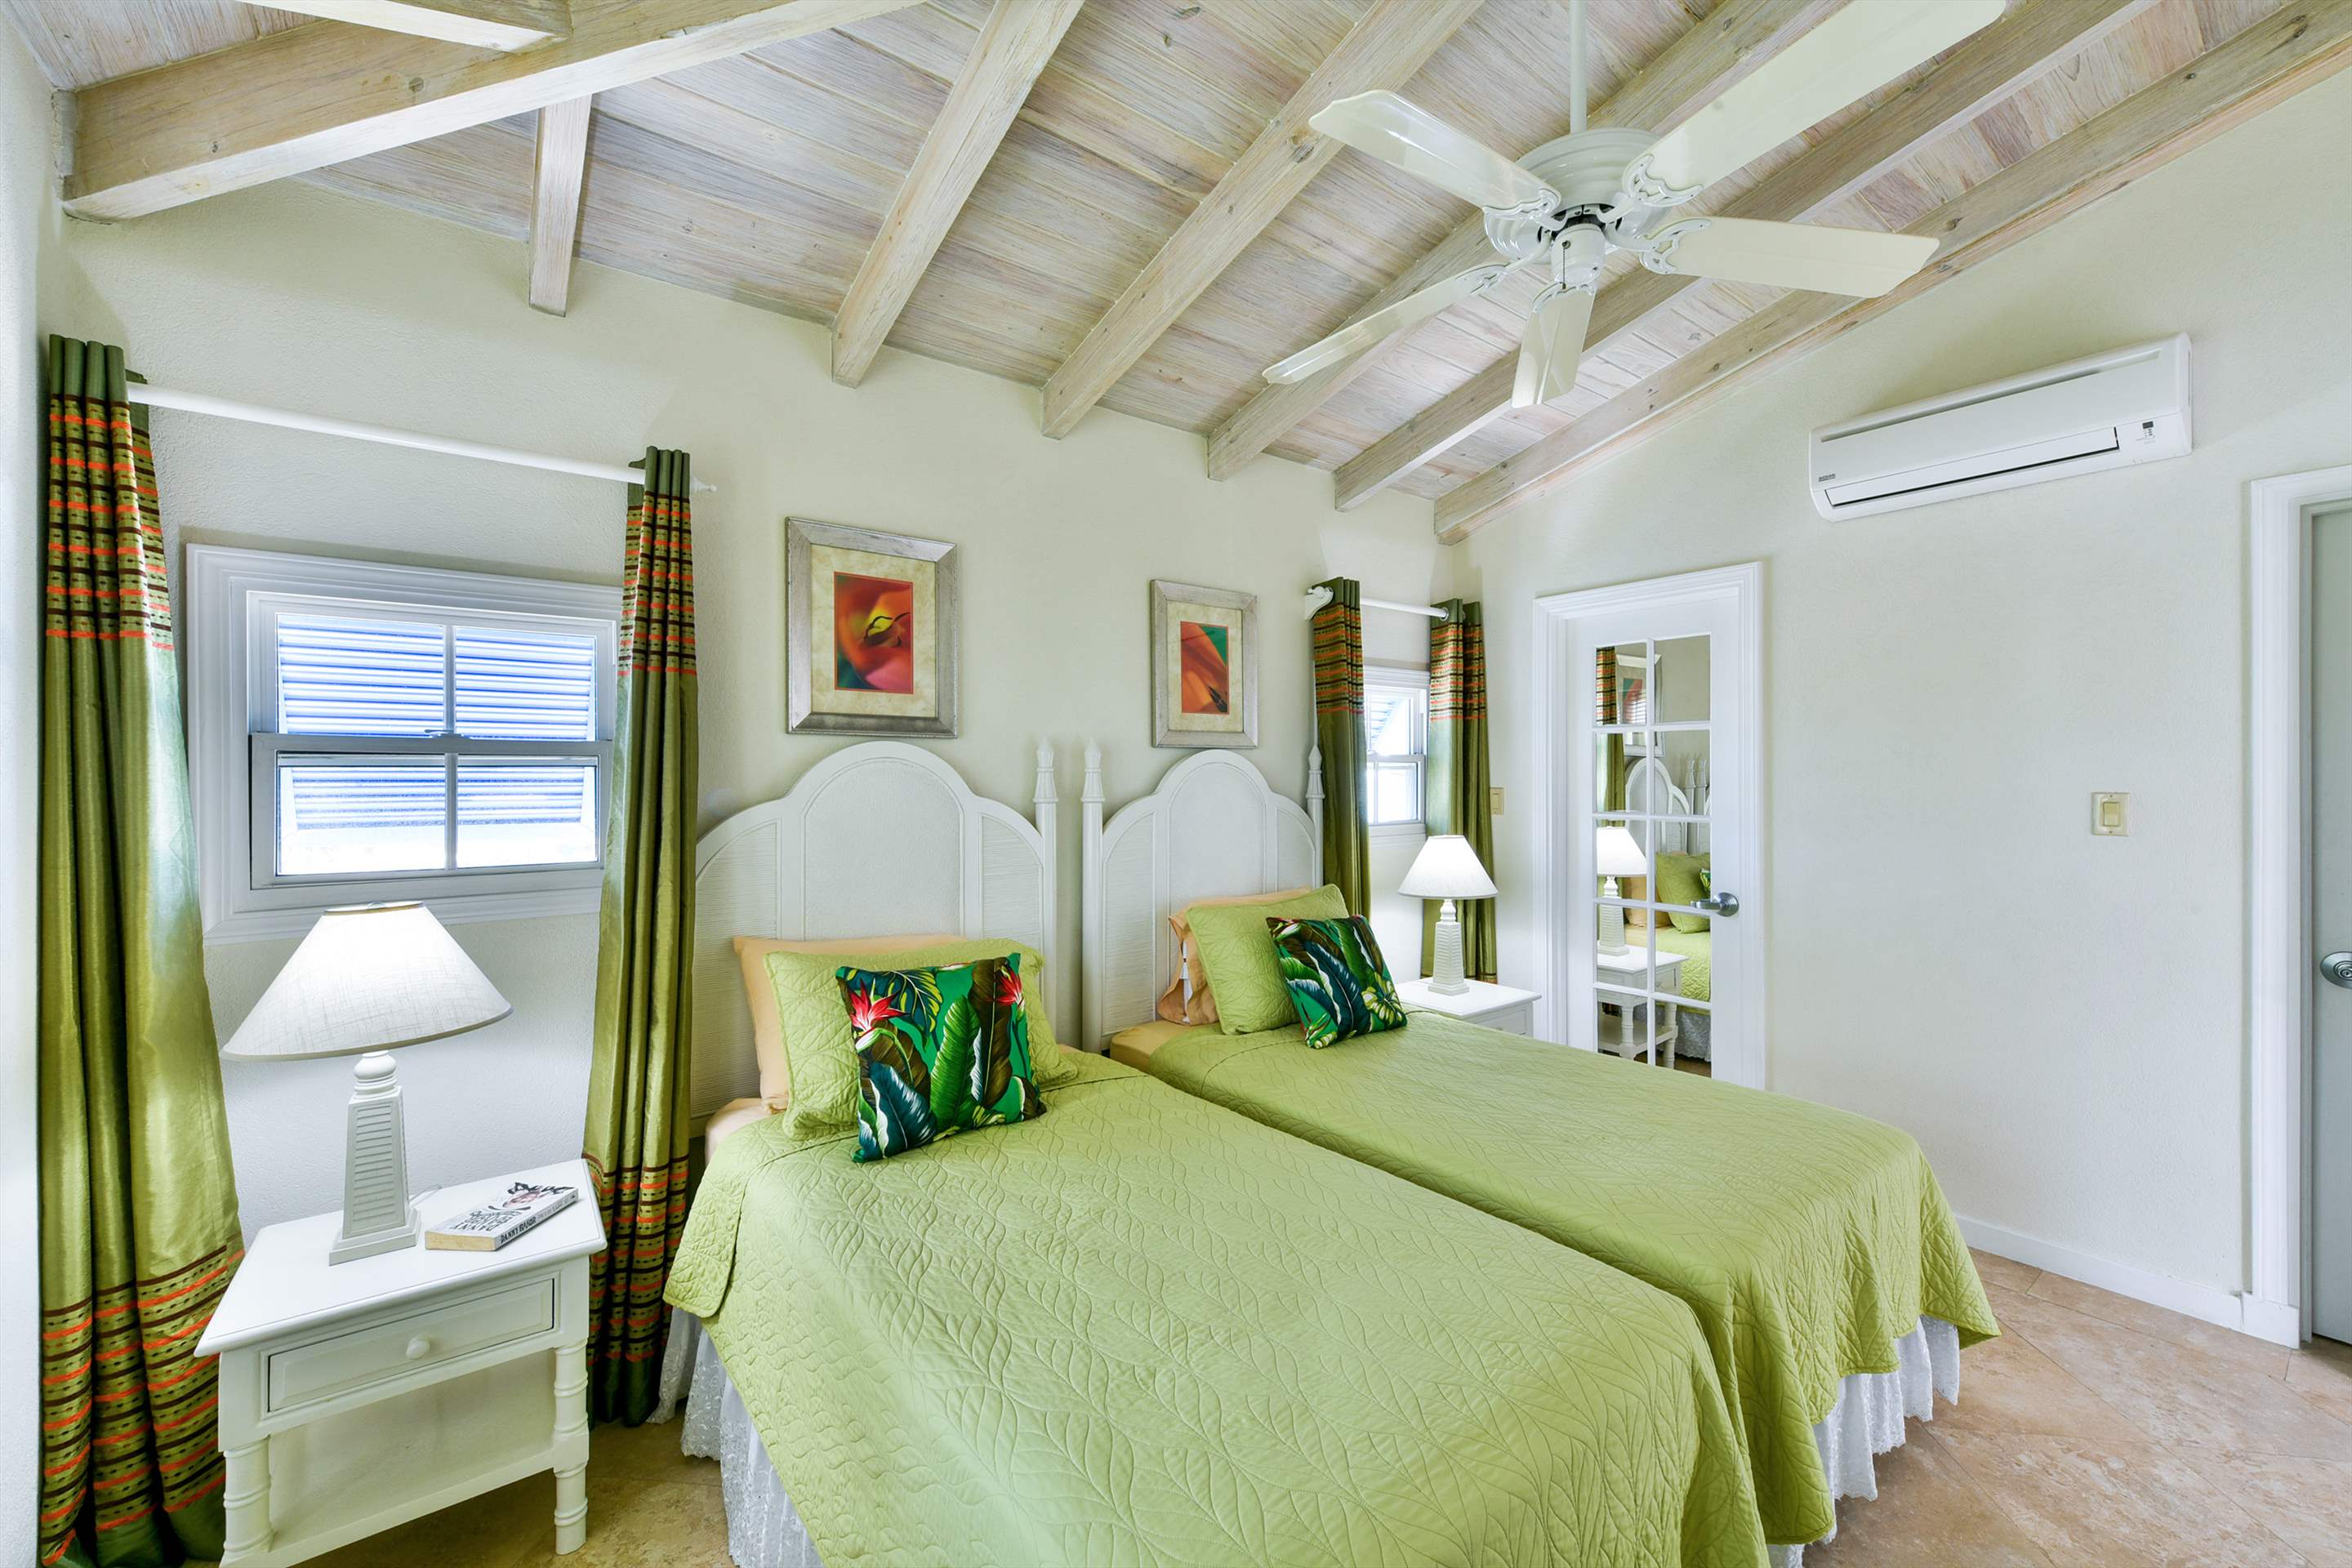 Maxwell Beach Villas 503, 2 bedroom, 2 bedroom villa in St. Lawrence Gap & South Coast, Barbados Photo #18